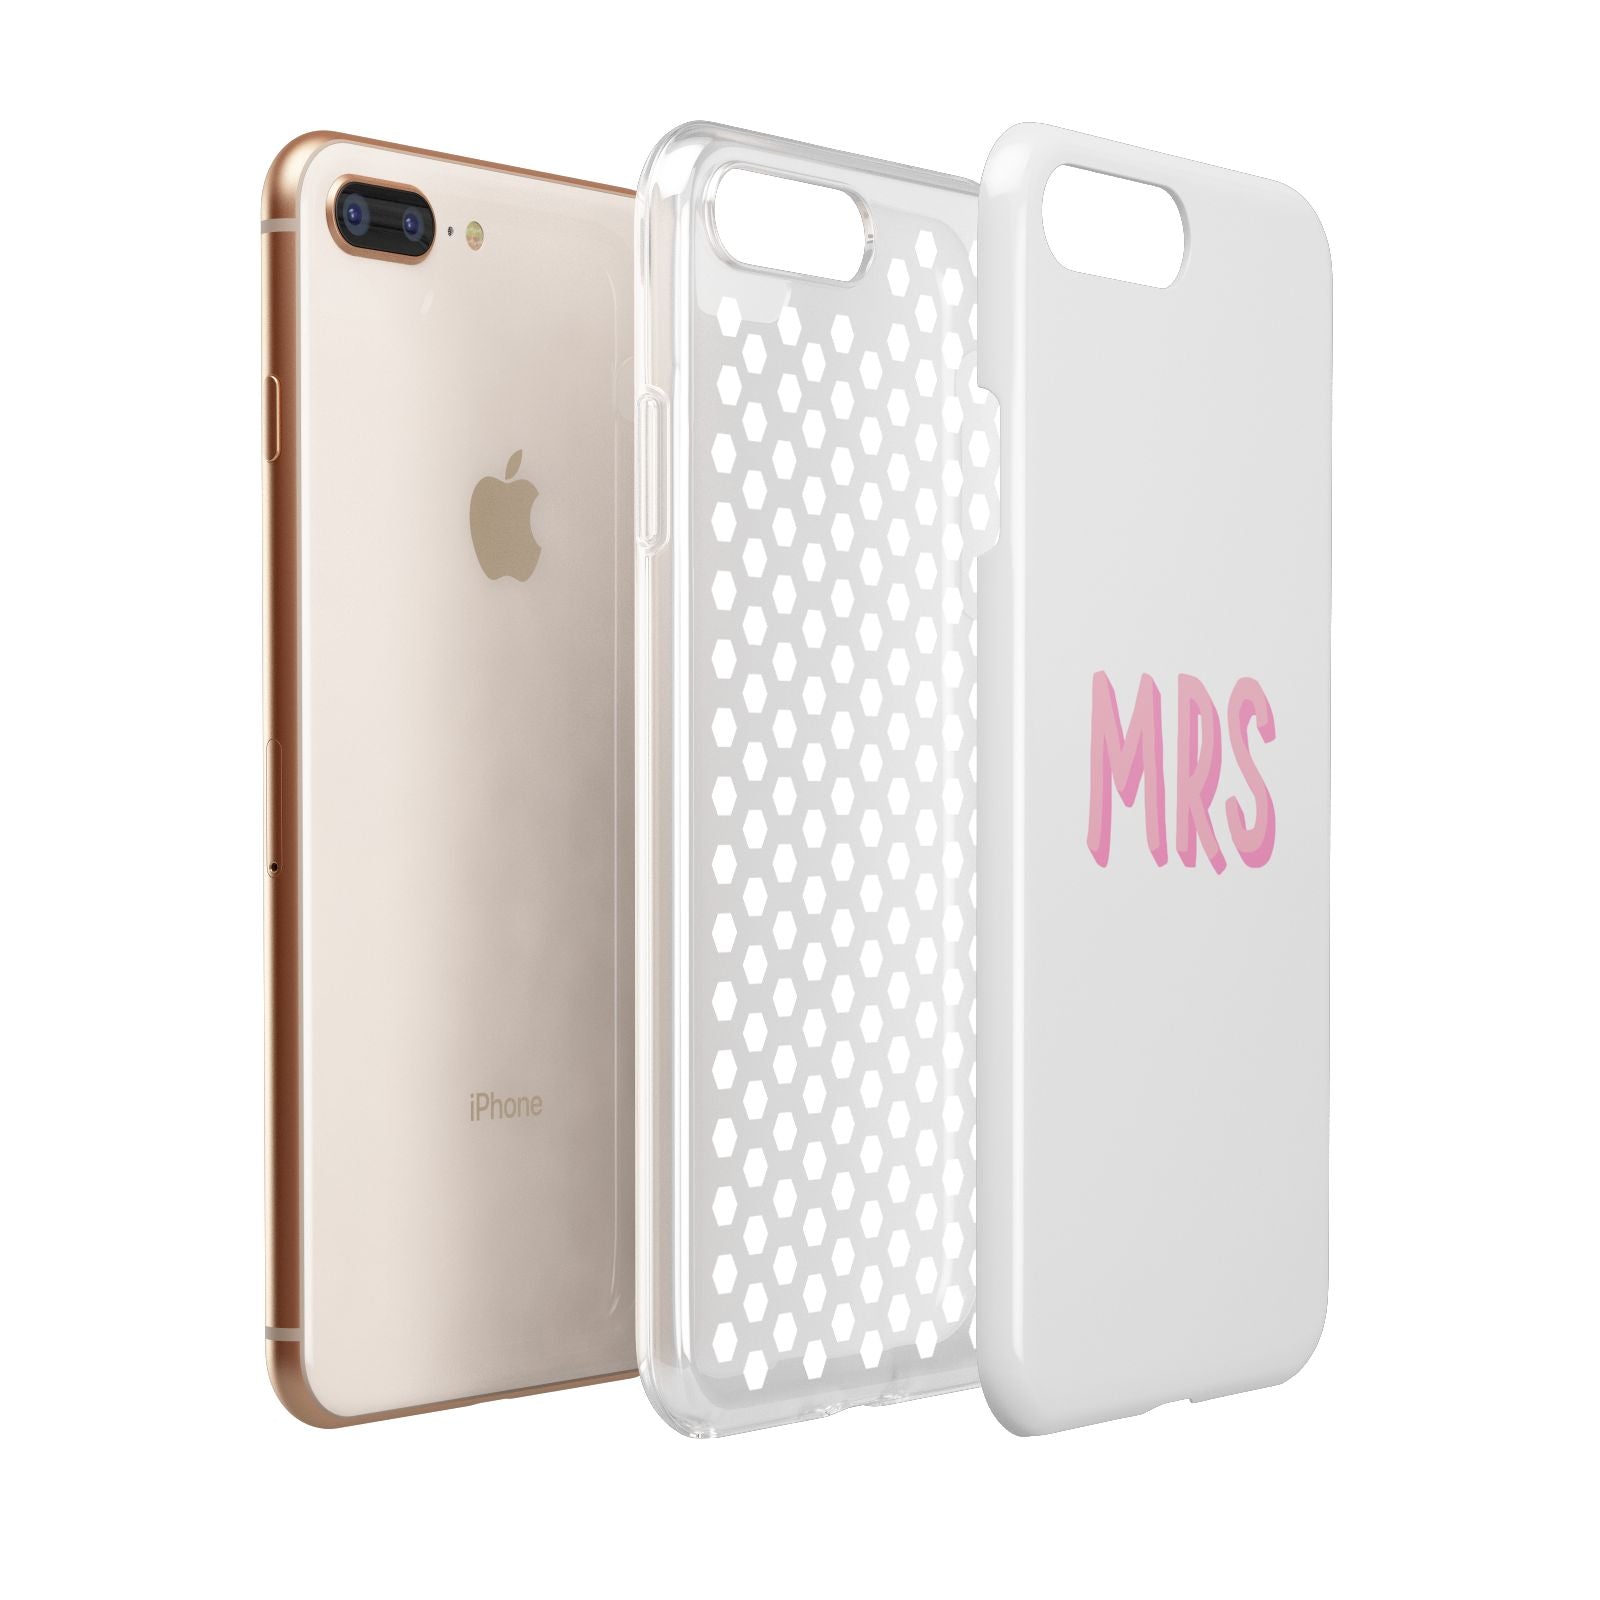 Mrs Apple iPhone 7 8 Plus 3D Tough Case Expanded View